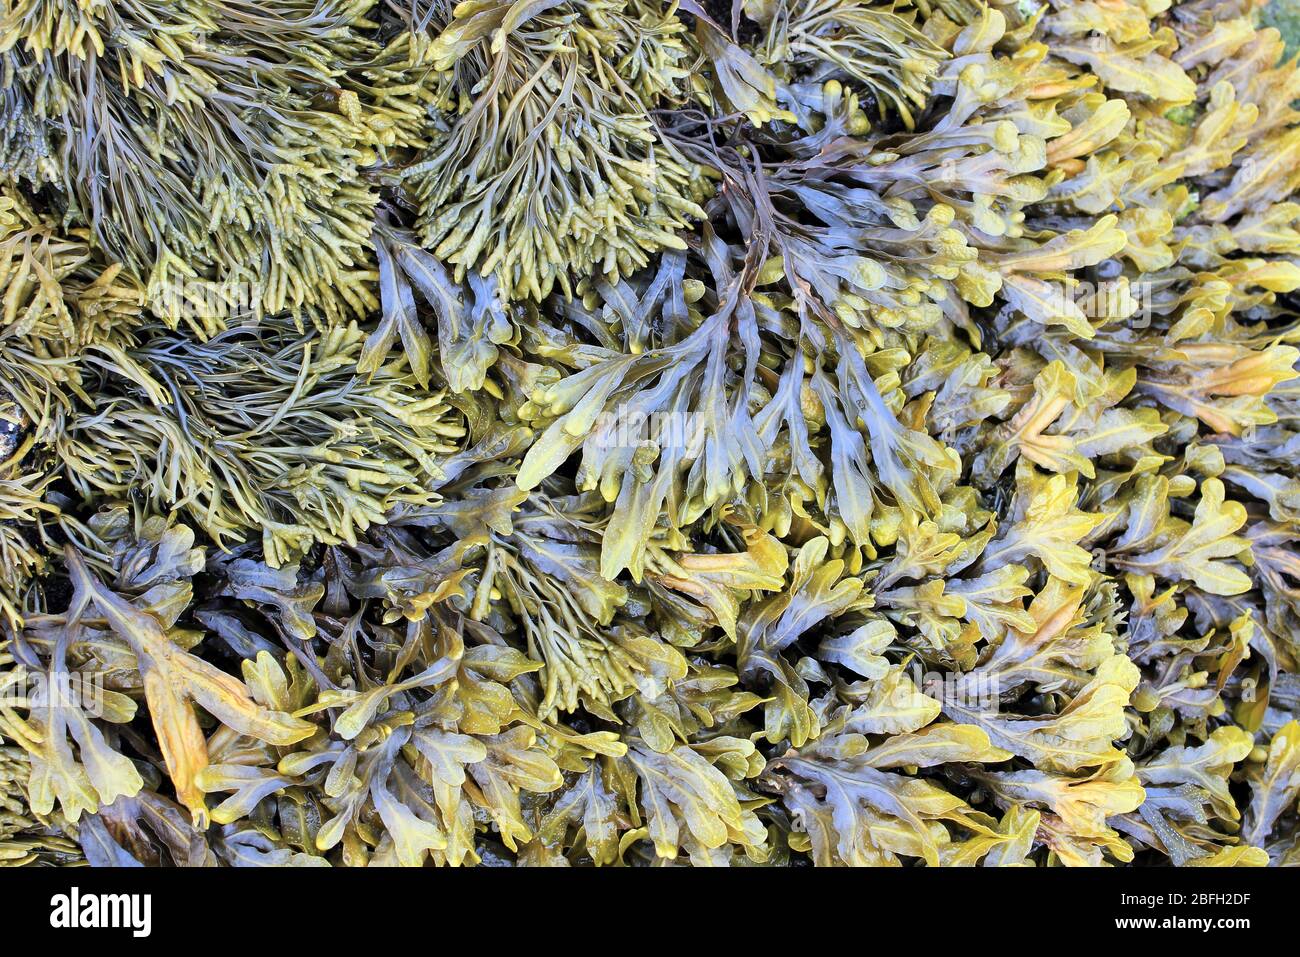 Rack canalisé Pelvetia canaliculata (en haut à gauche) et rack en spirale algues Fucus spiralis prises à Penmon point, Anglesey, Royaume-Uni Banque D'Images